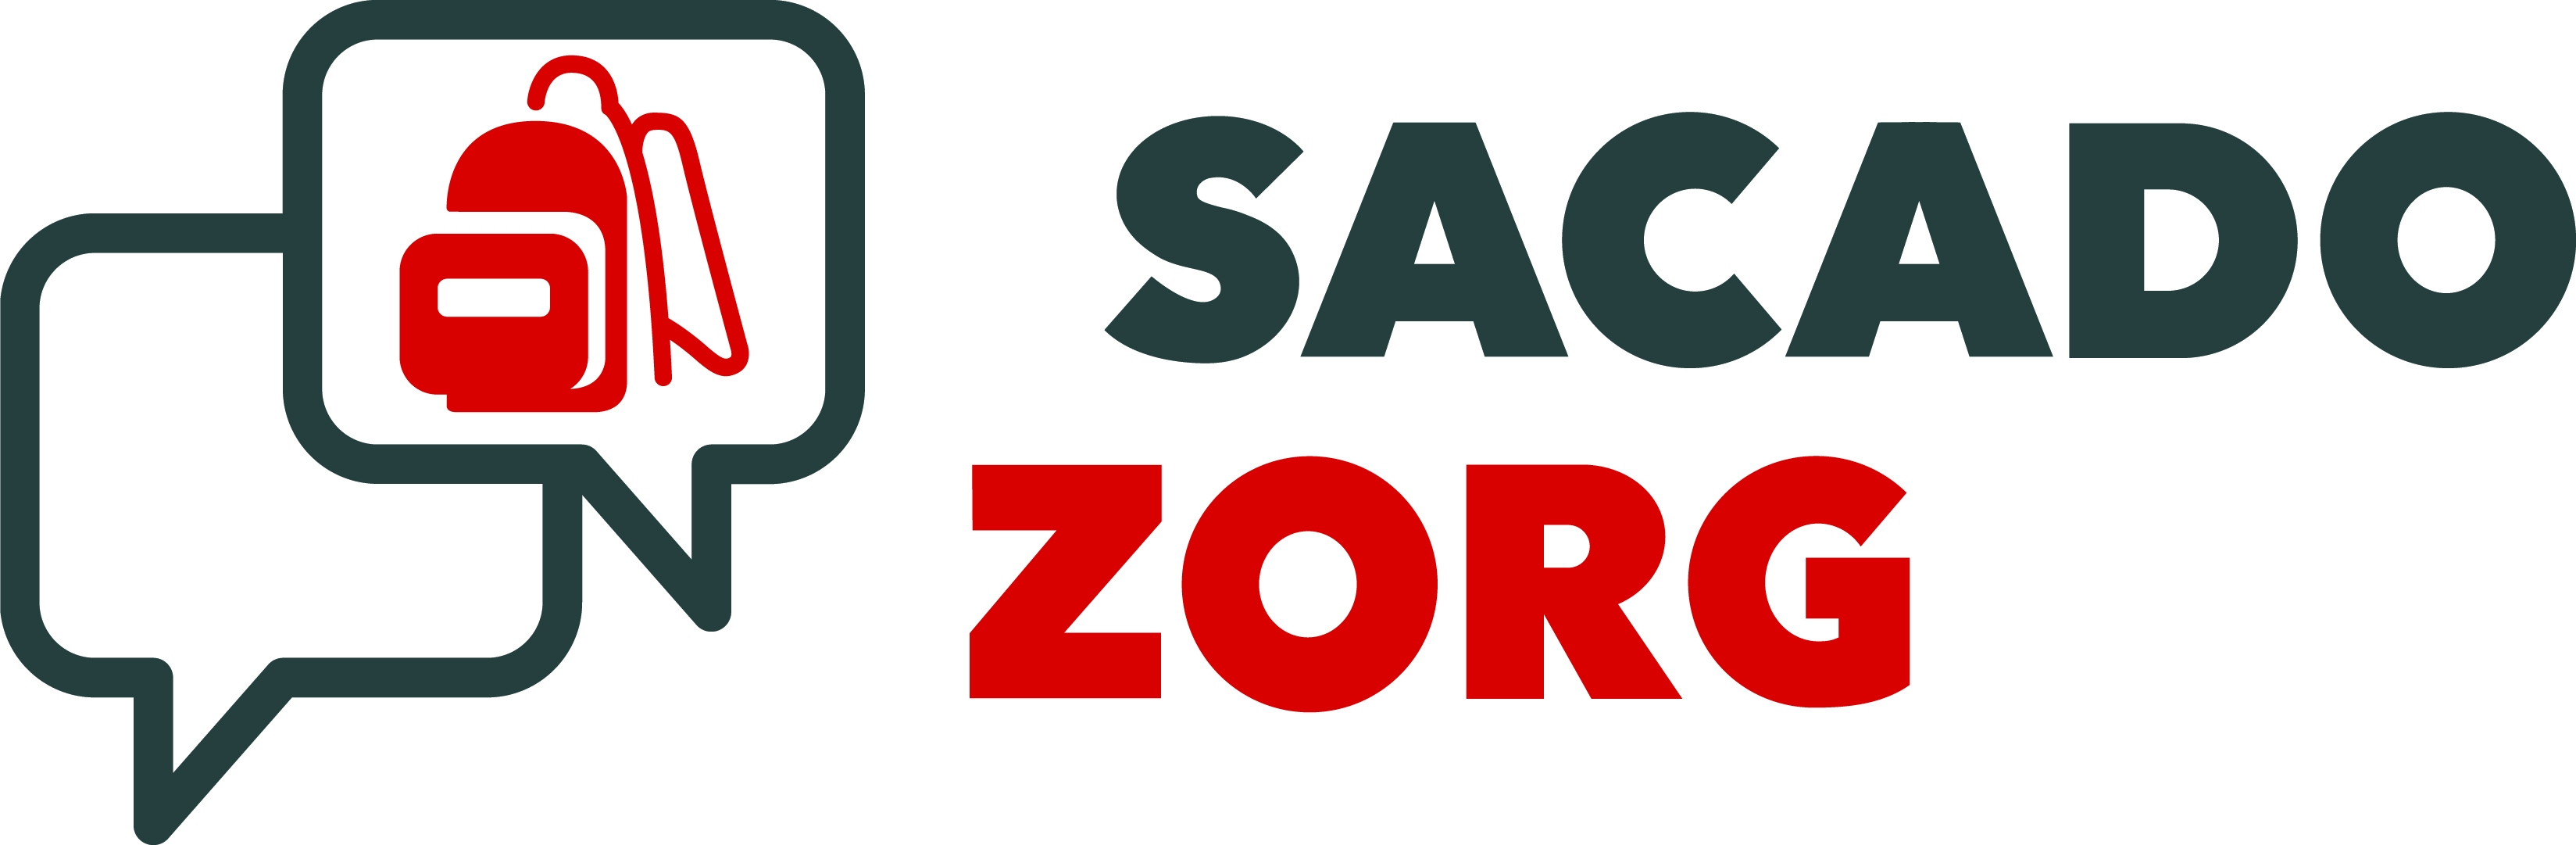 Sacado Zorg